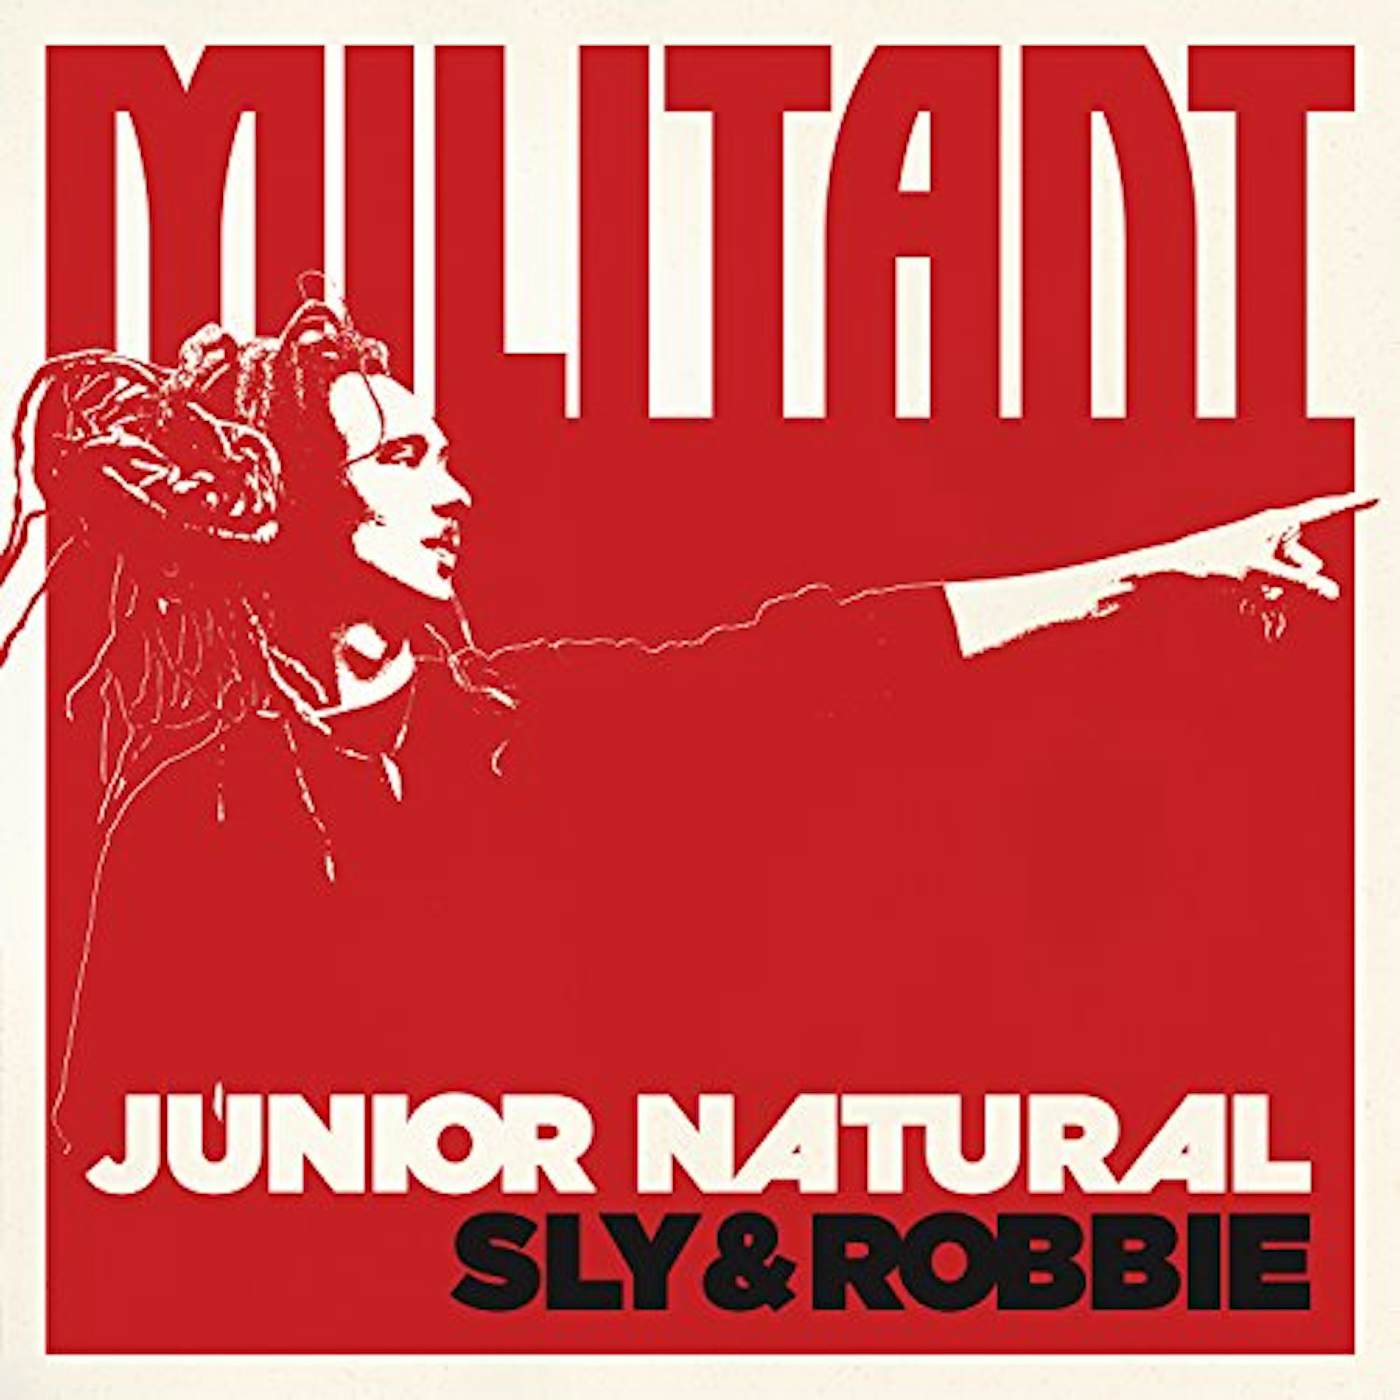 Junior Natural MILITANT Vinyl Record